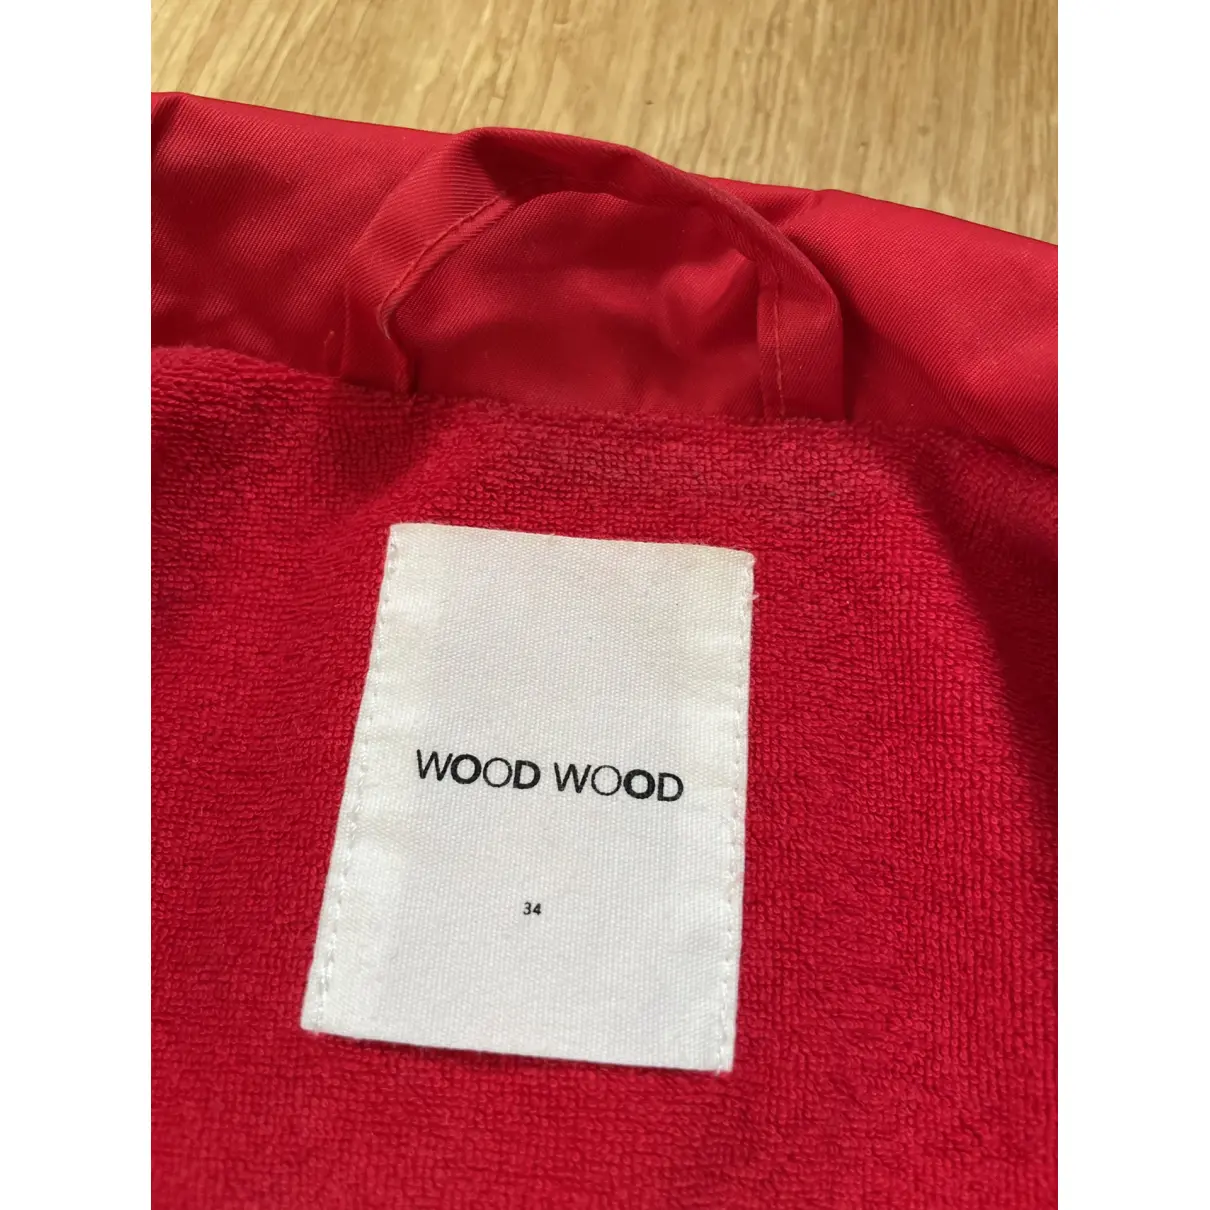 Buy Wood Wood Jacket online